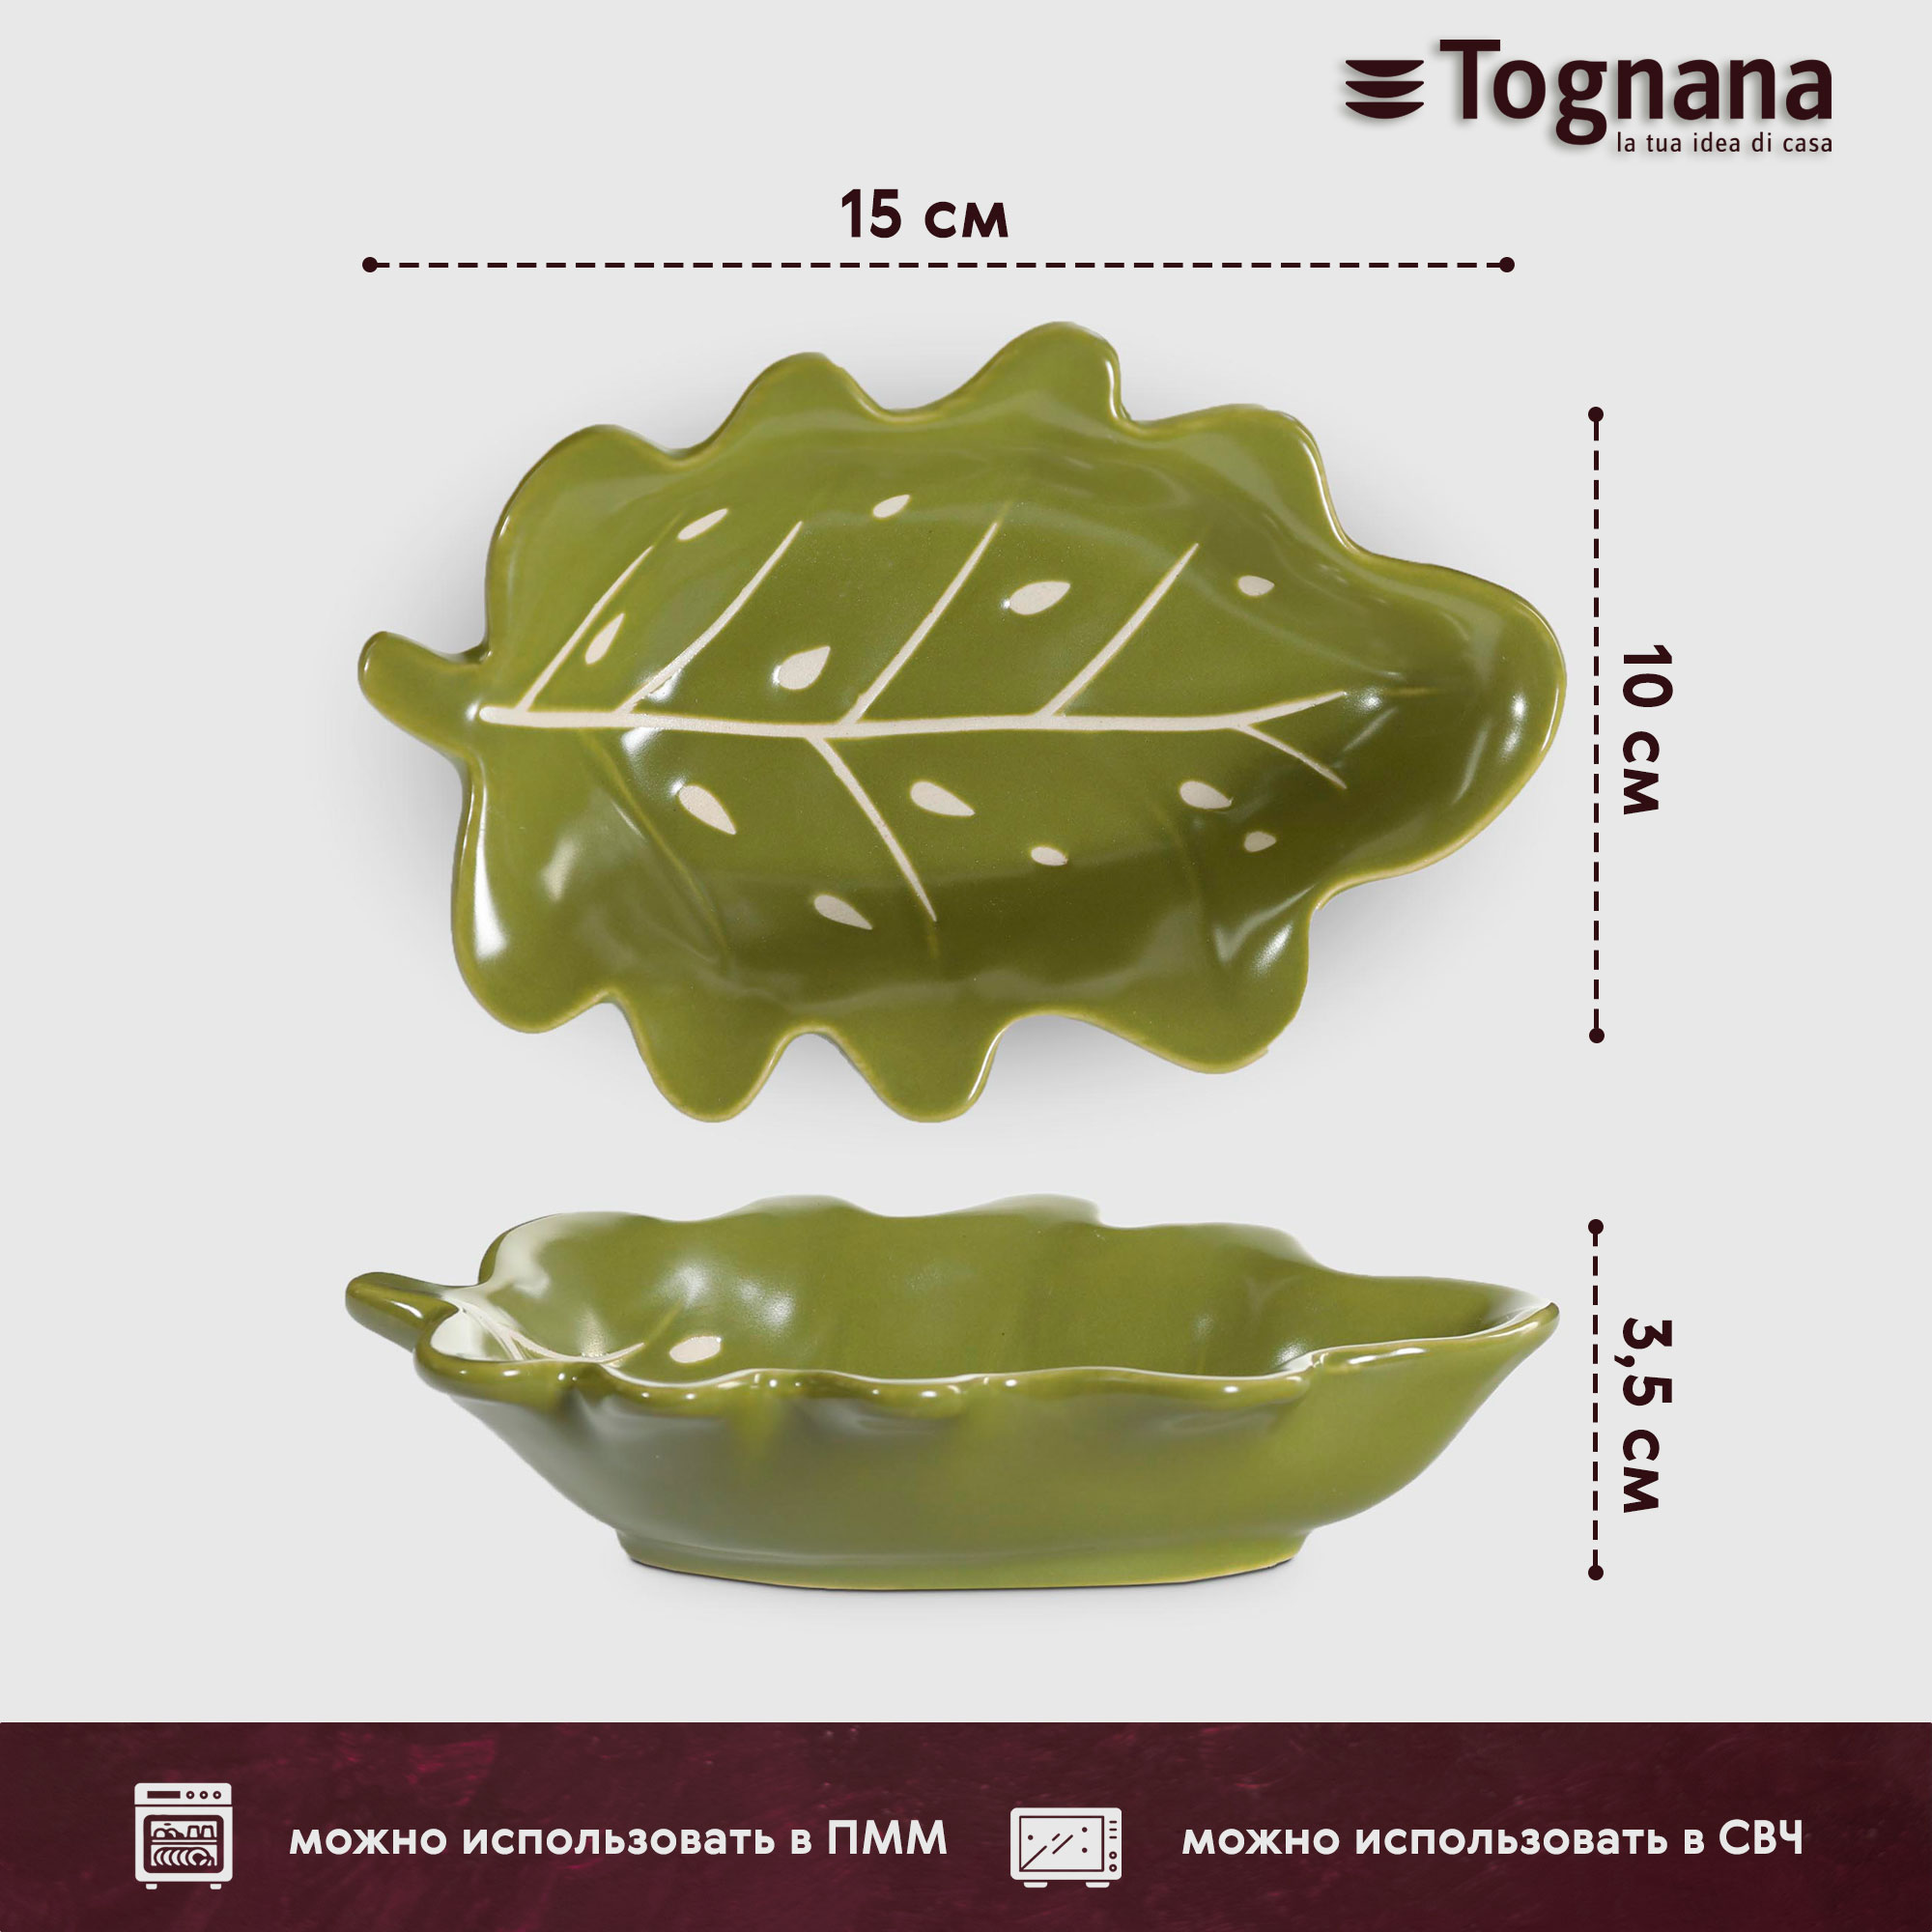 Блюдо Tognana Foglie зеленое 15x10 см, цвет зеленый - фото 3